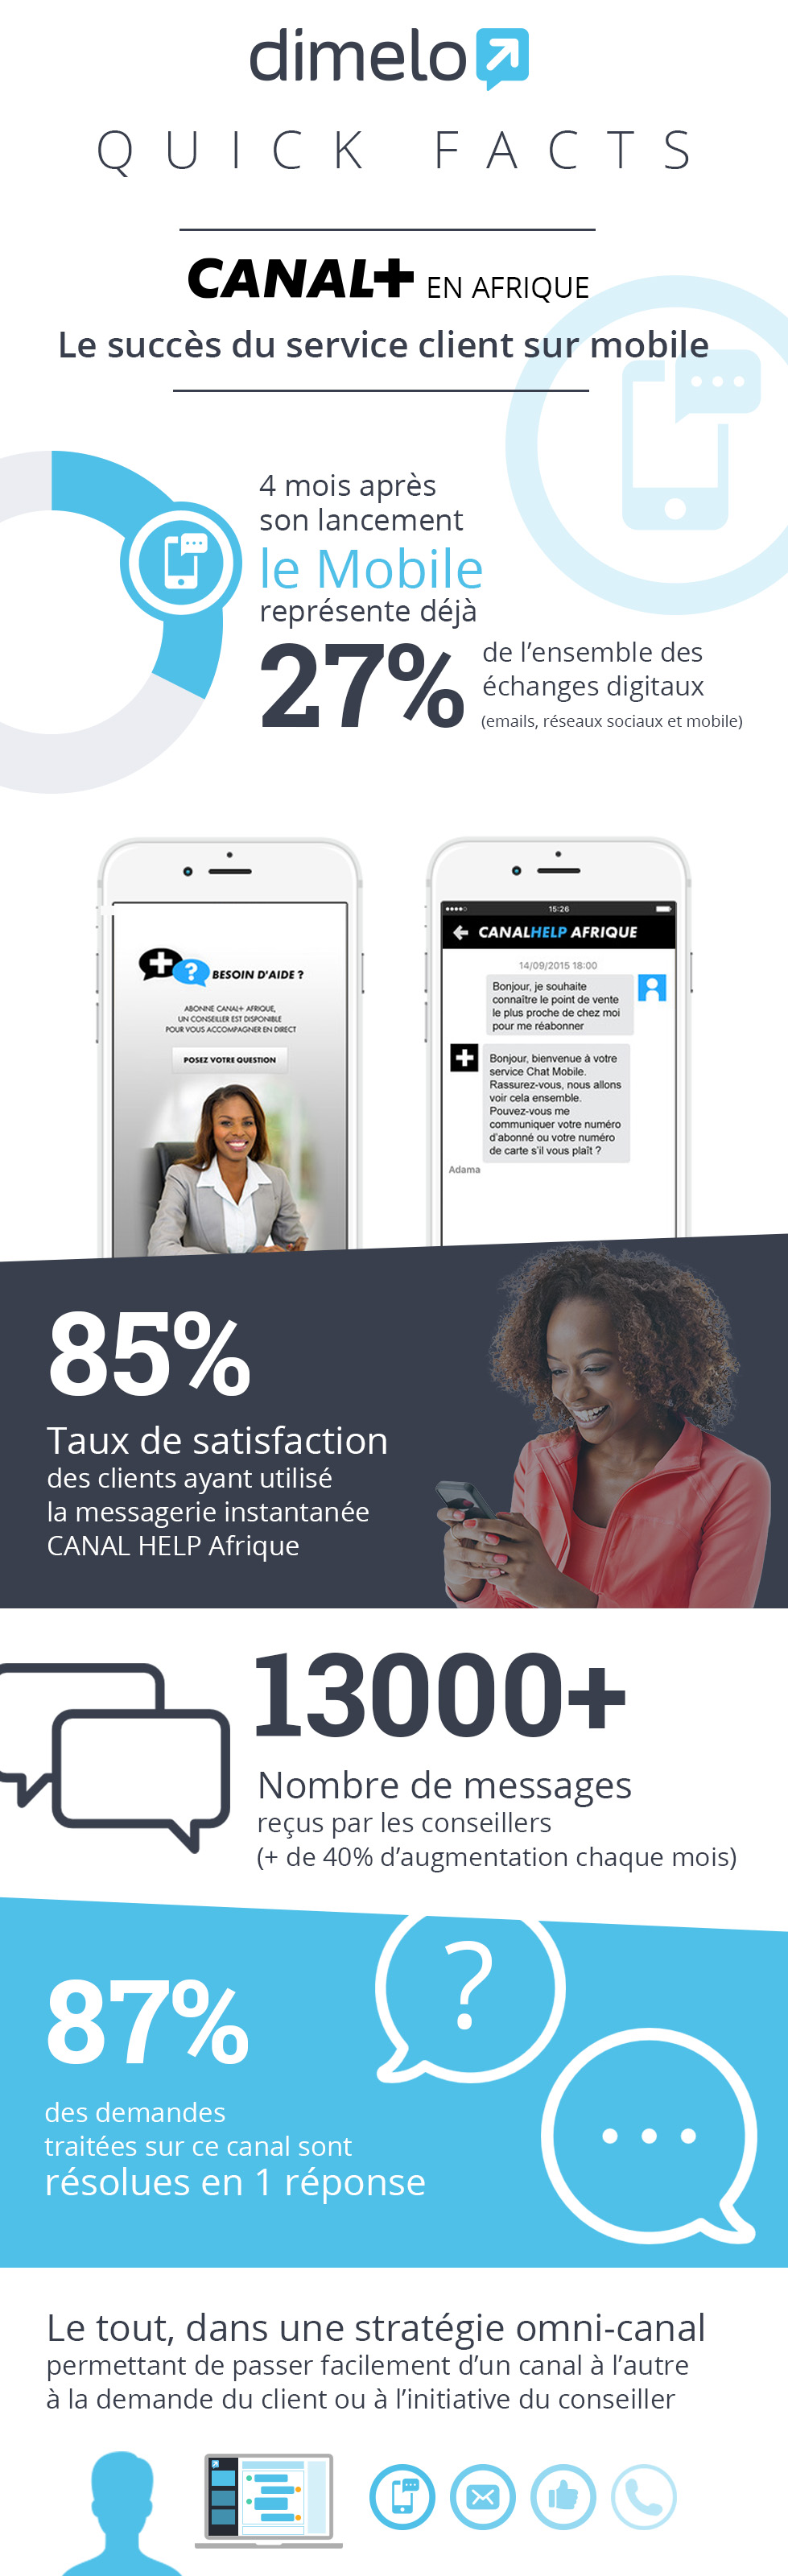 canal + Afrique succes service client mobile